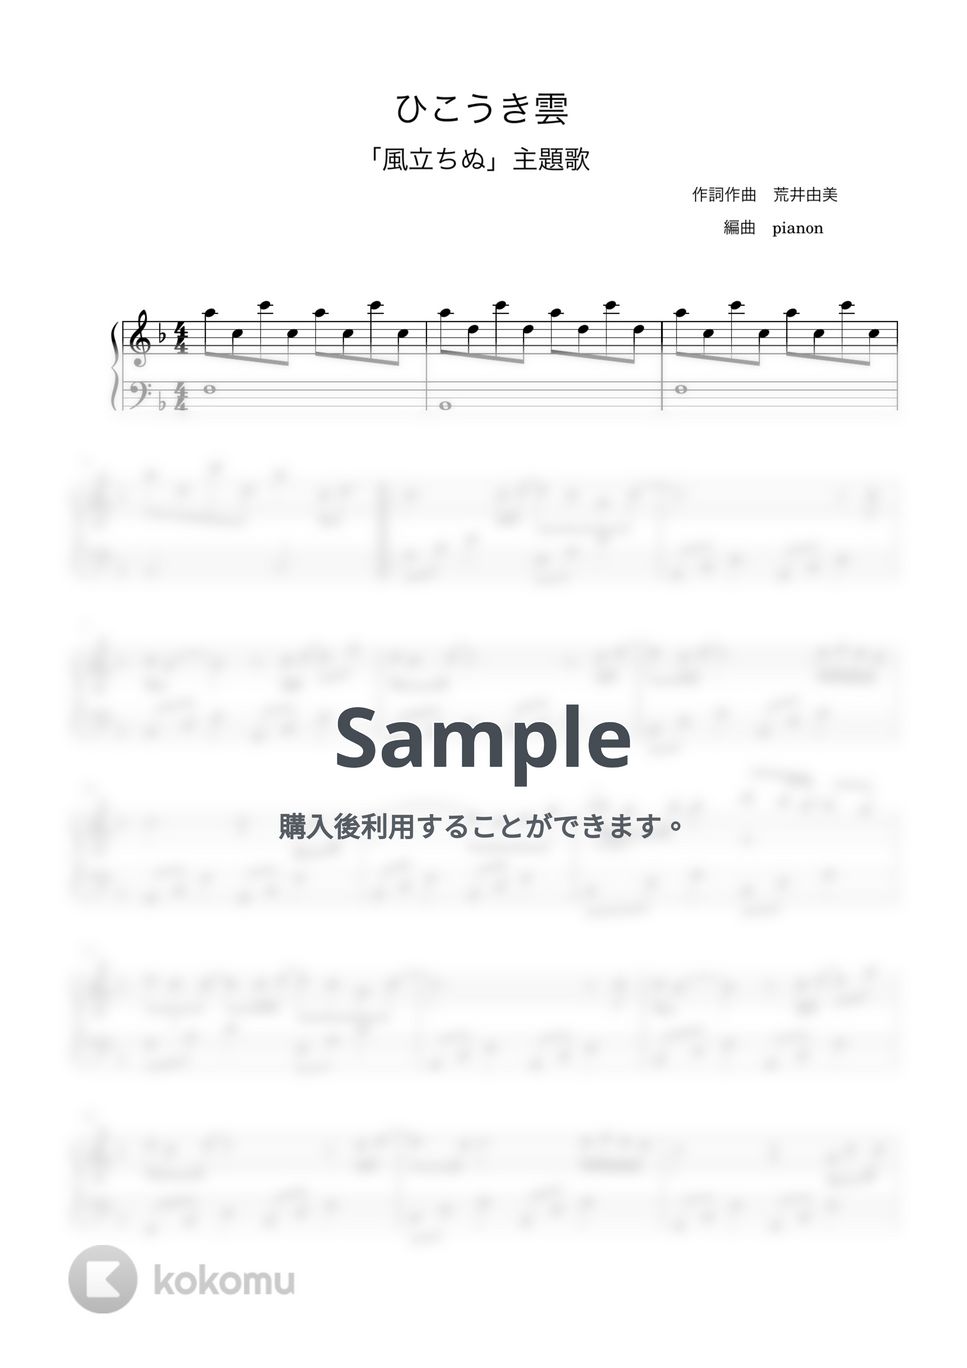 荒井由美 - ひこうき雲 (ピアノ初中級ソロ) by pianon